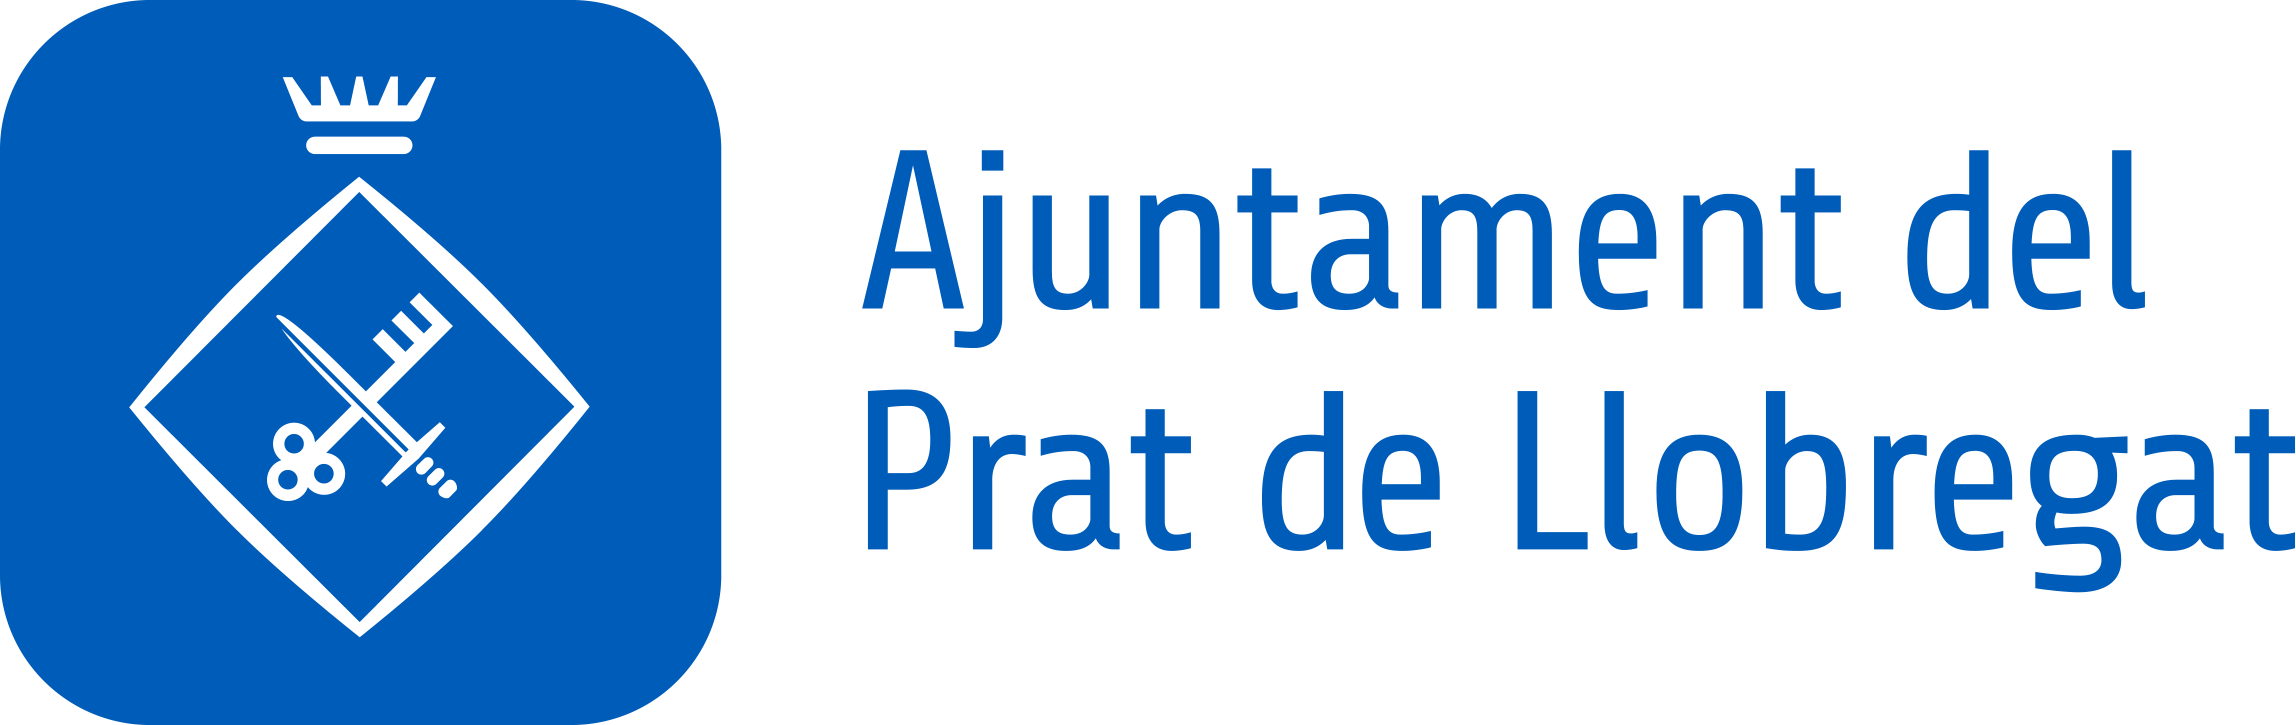 logo Ajuntament del prat de Llobregat